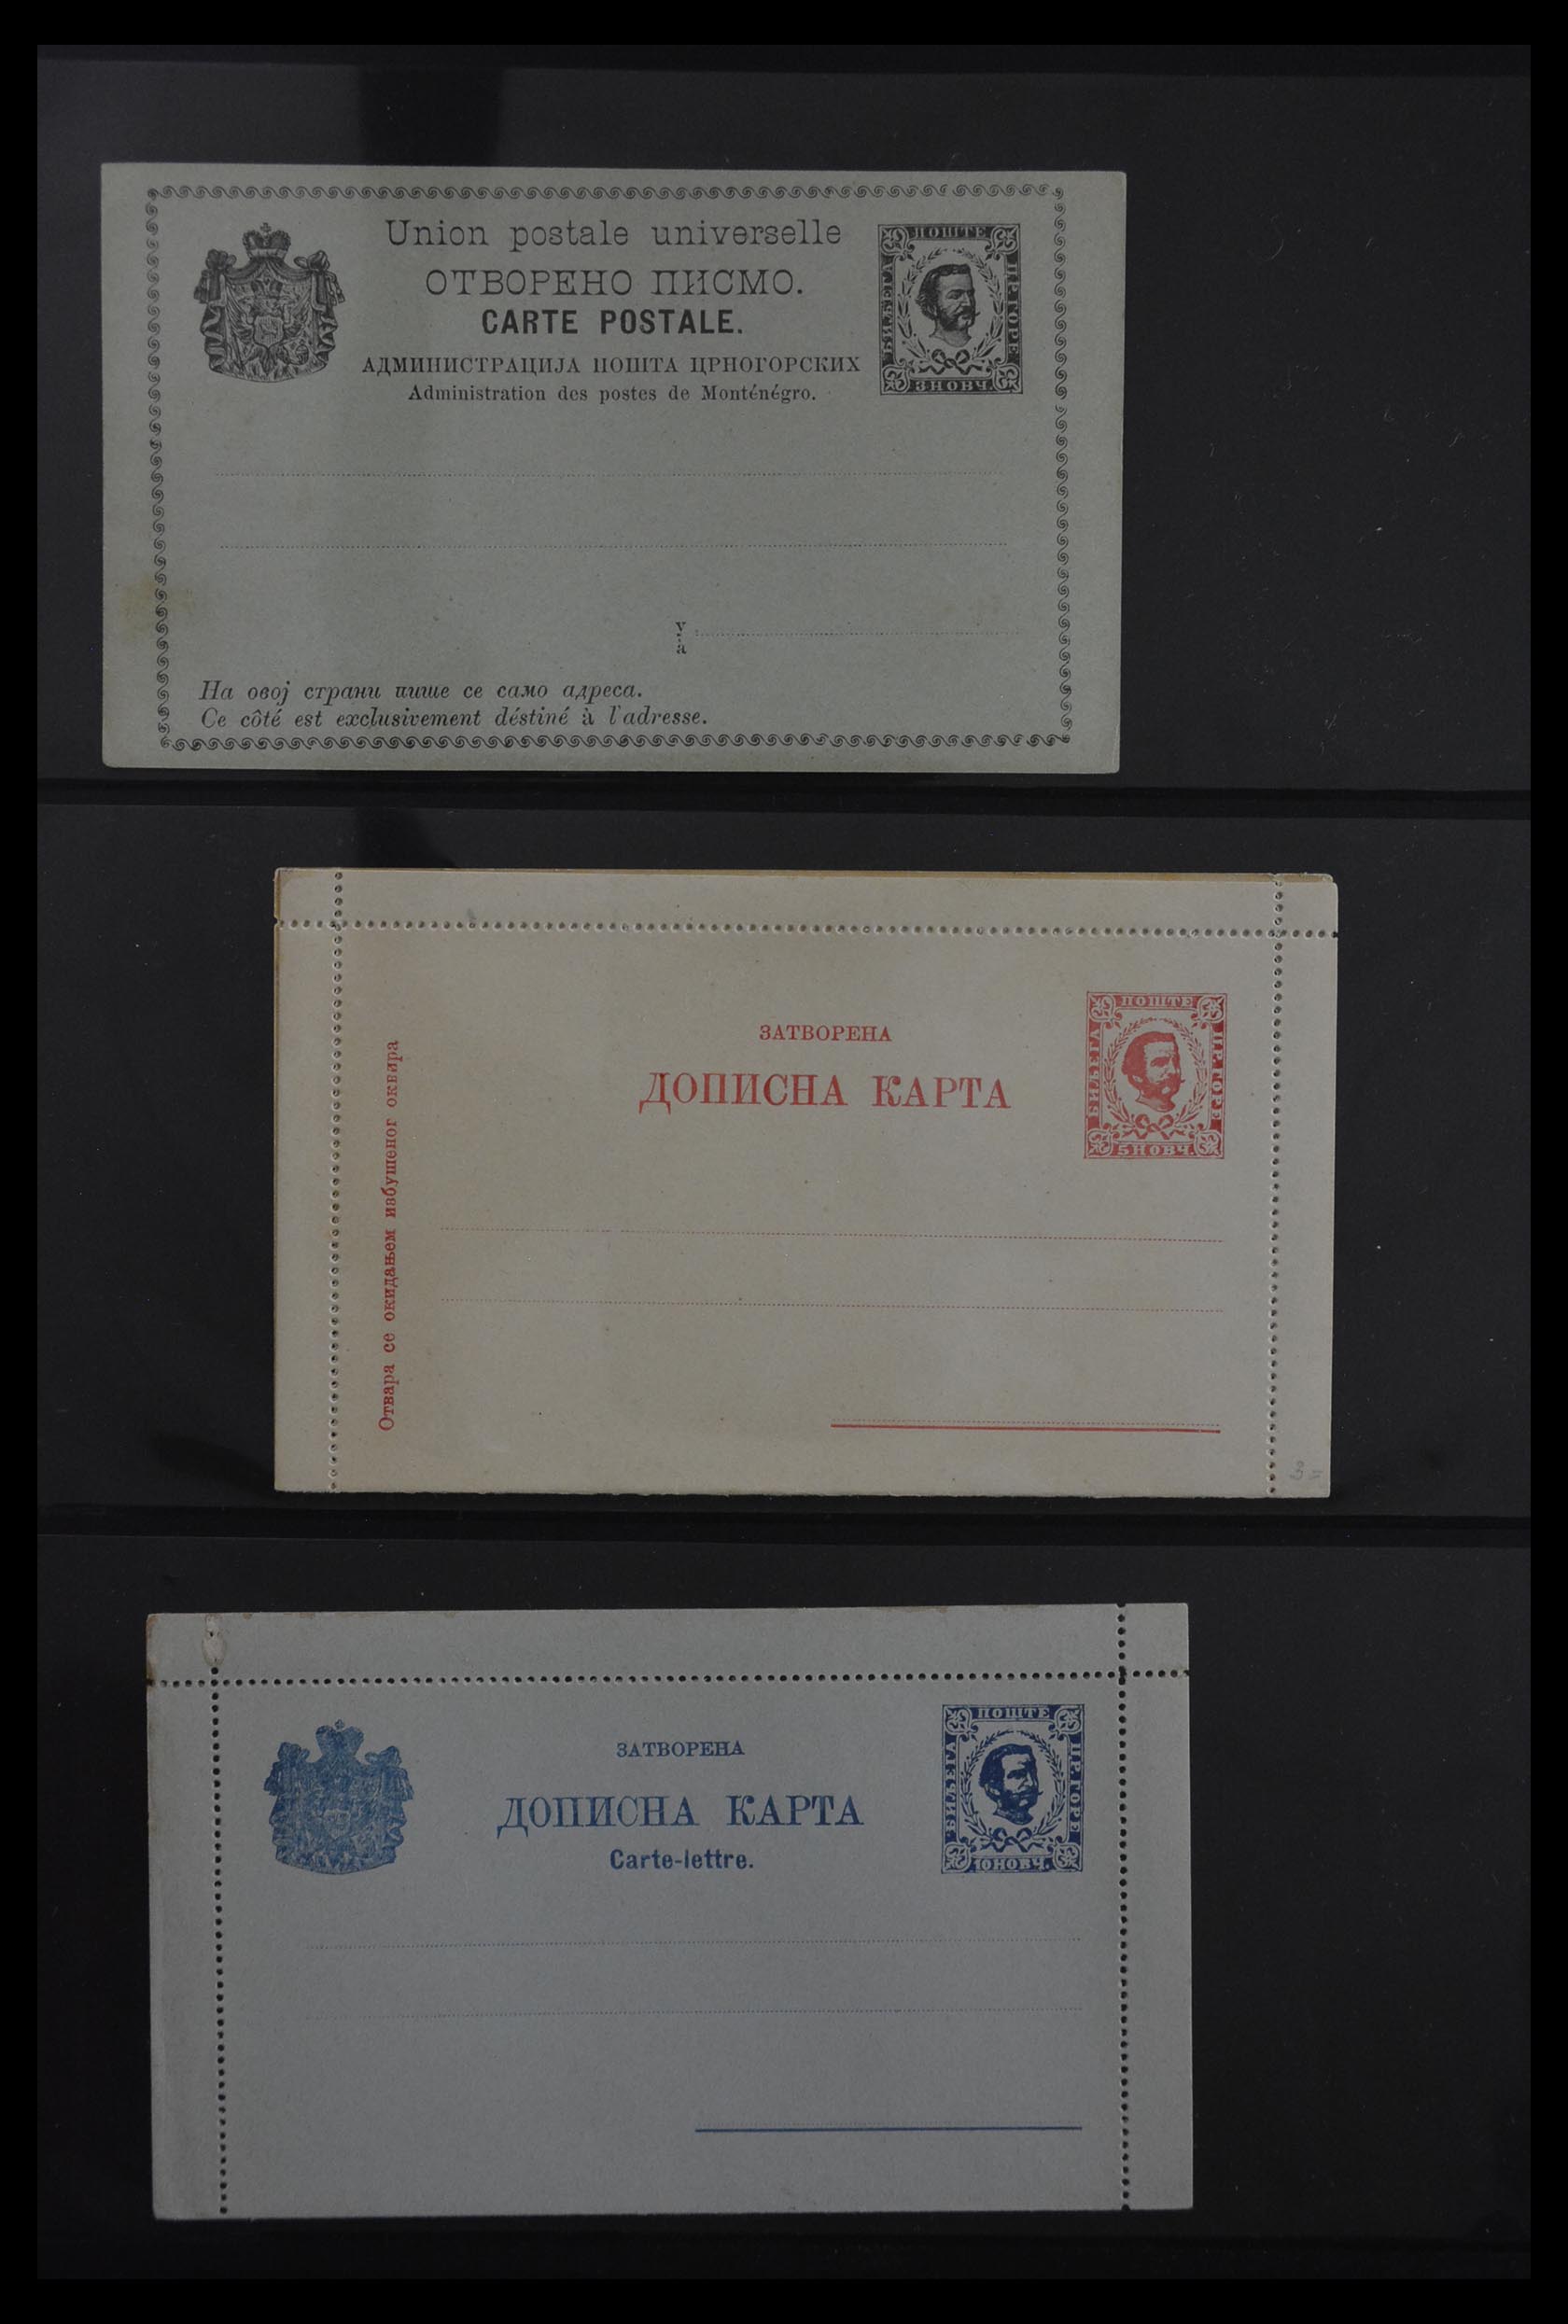 29897 006 - 29897 Montenegro 1874-1941.